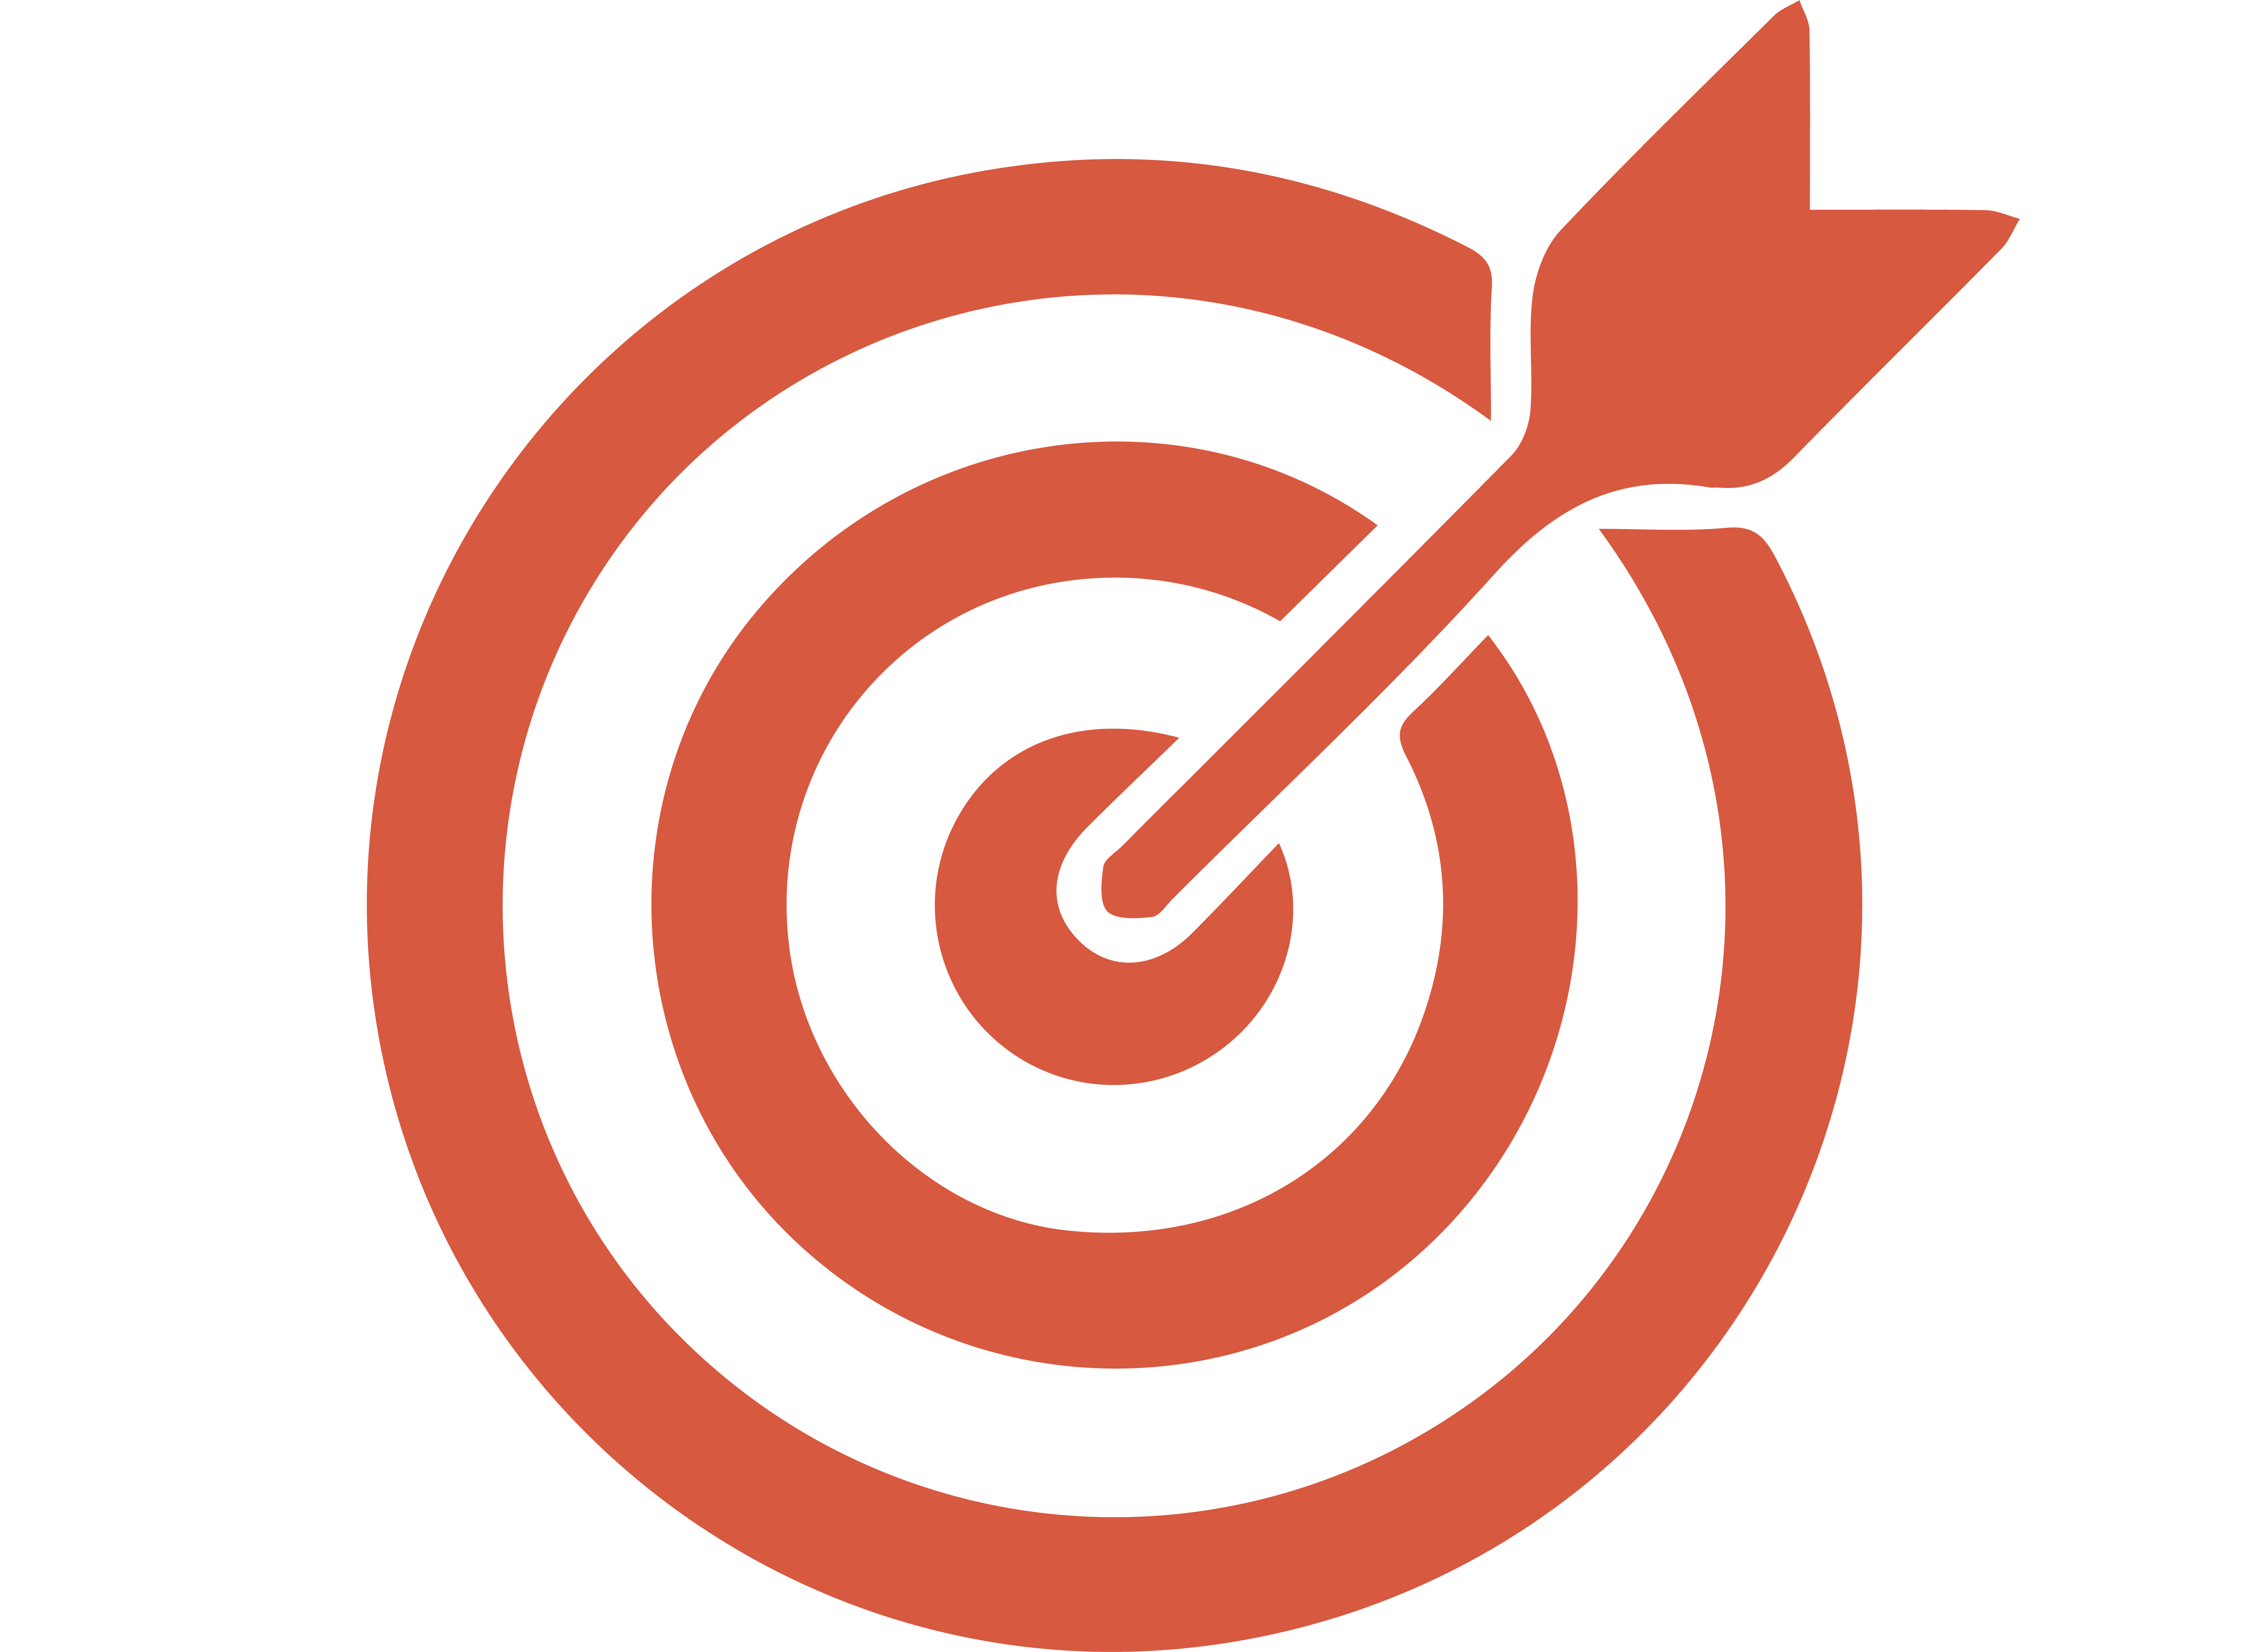 Bullseye Icon